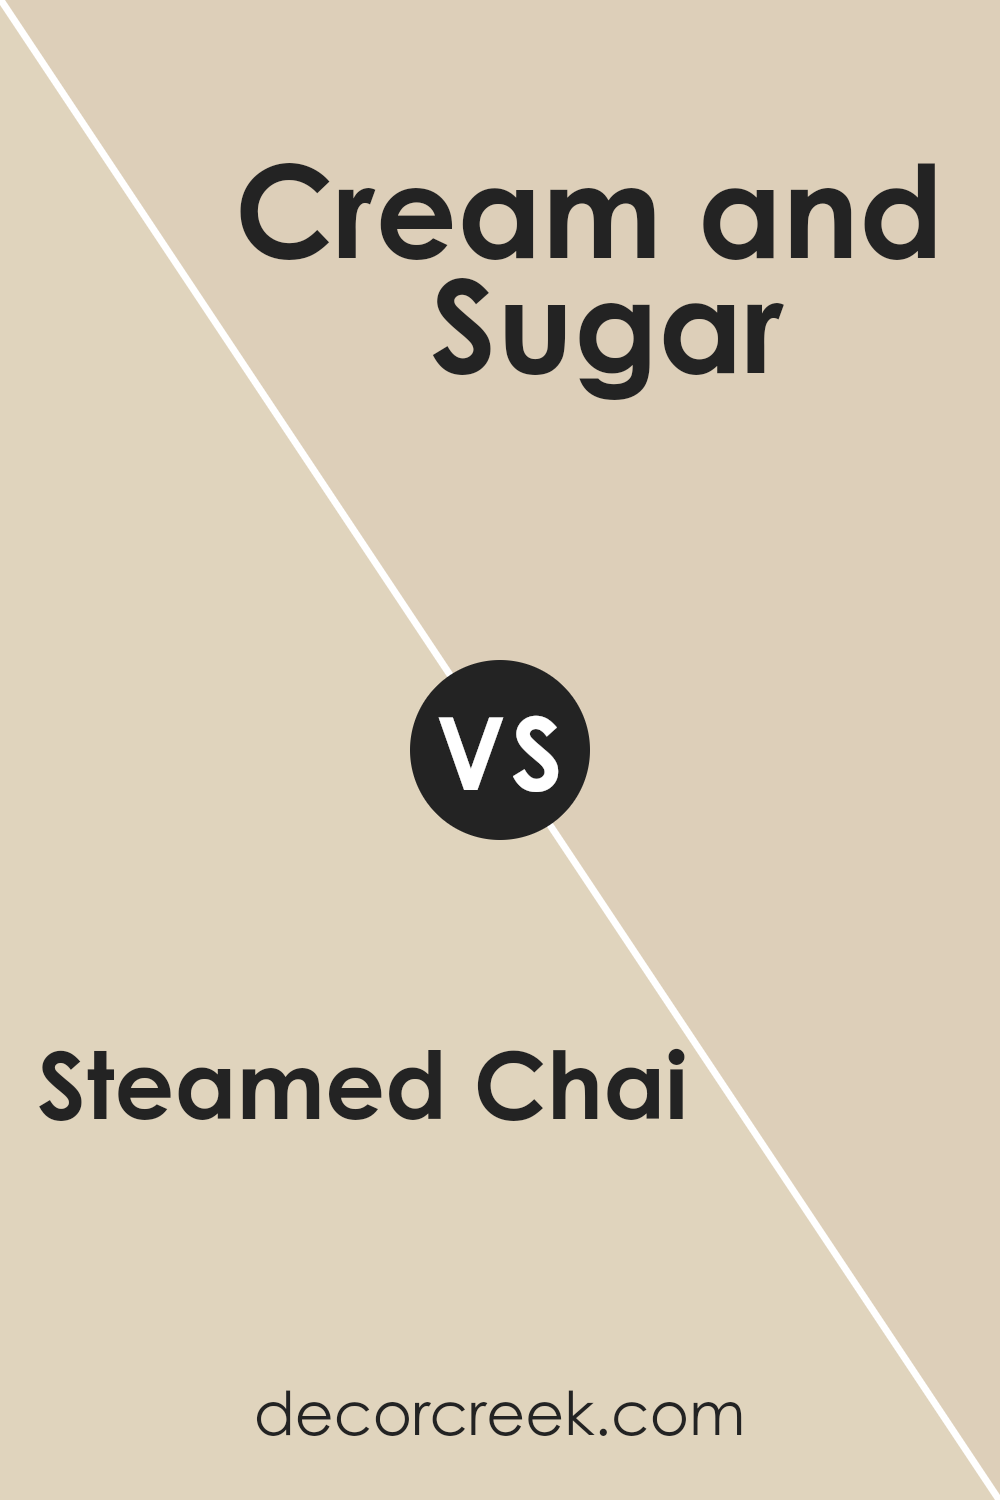 steamed_chai_sw_9509_vs_cream_and_sugar_sw_9507